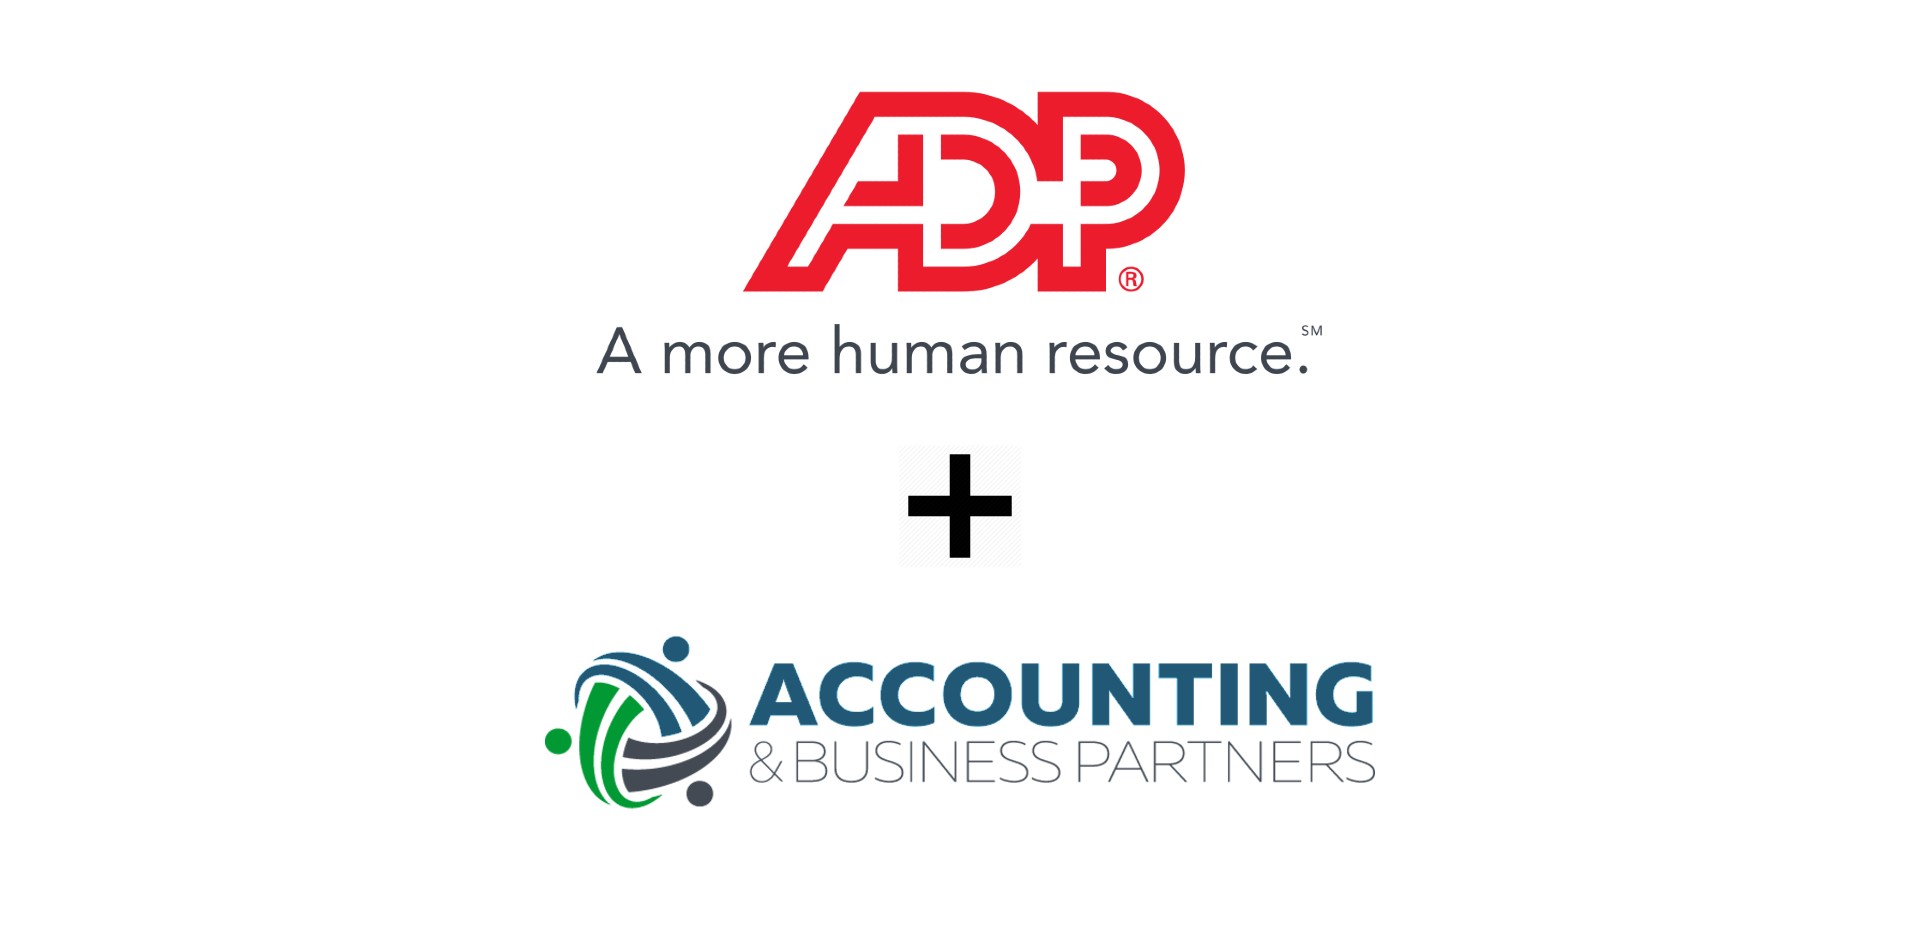 https://accountingandbusinesspartners.com/wp-content/uploads/2021/03/ADPBanner.jpg